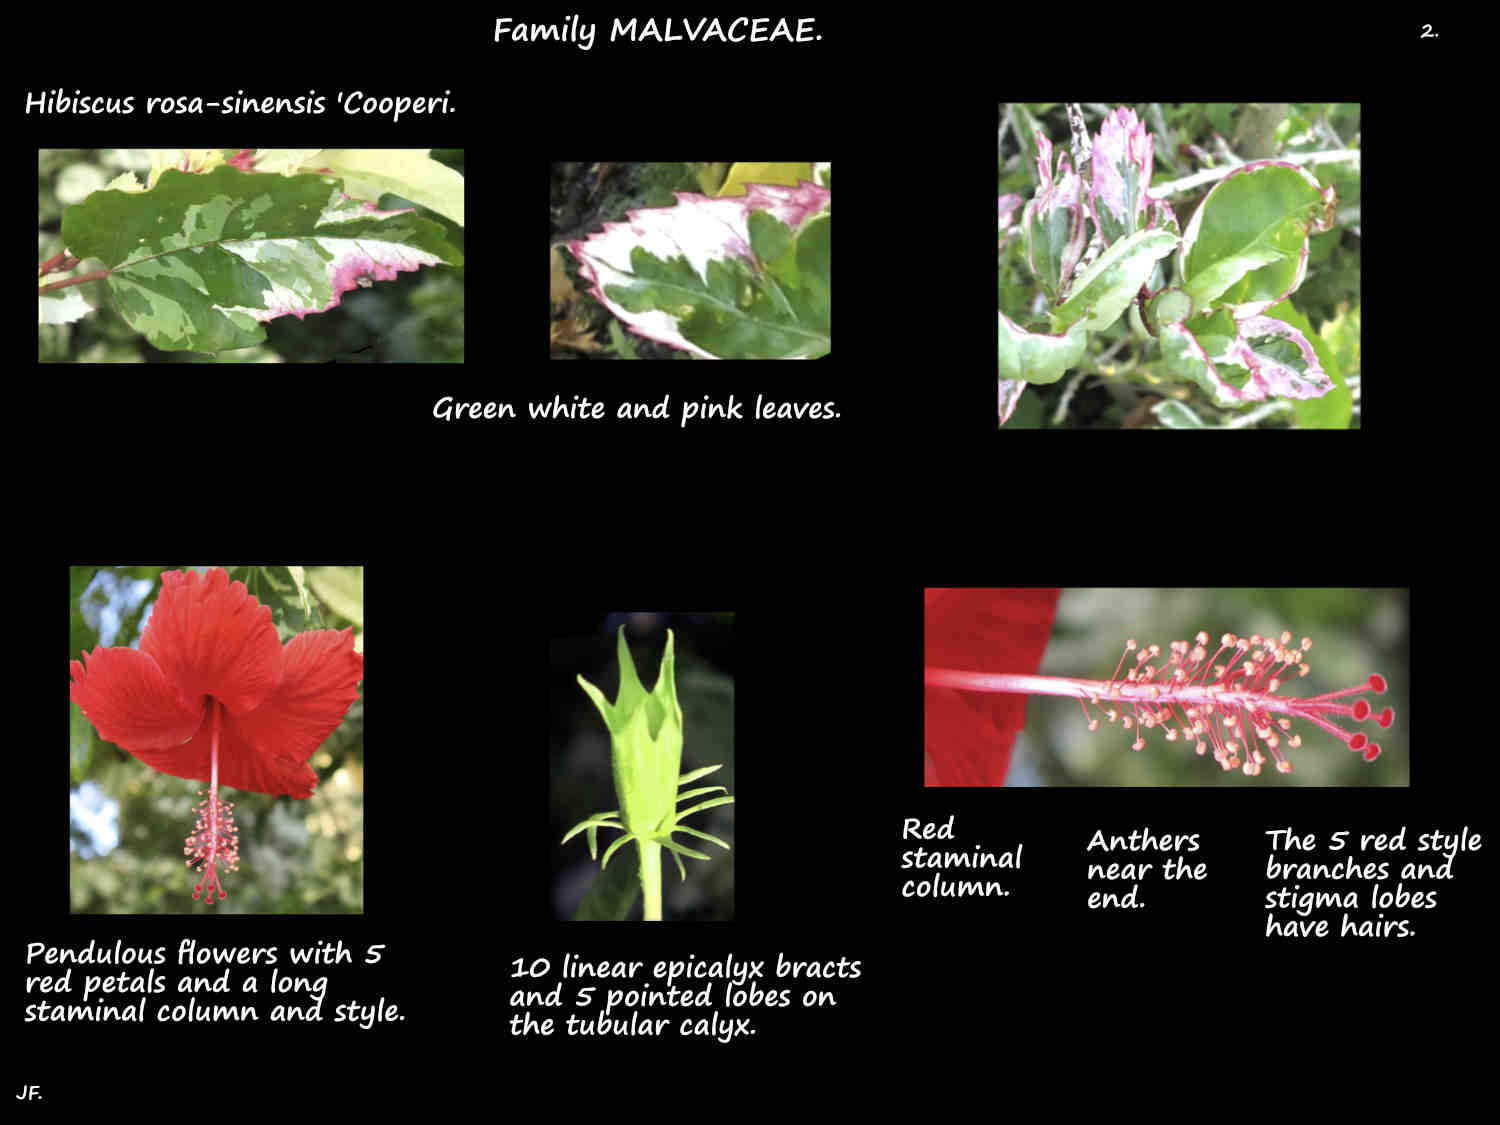 2 Hibiscus 'Cooperi' variegated leaves & flowers